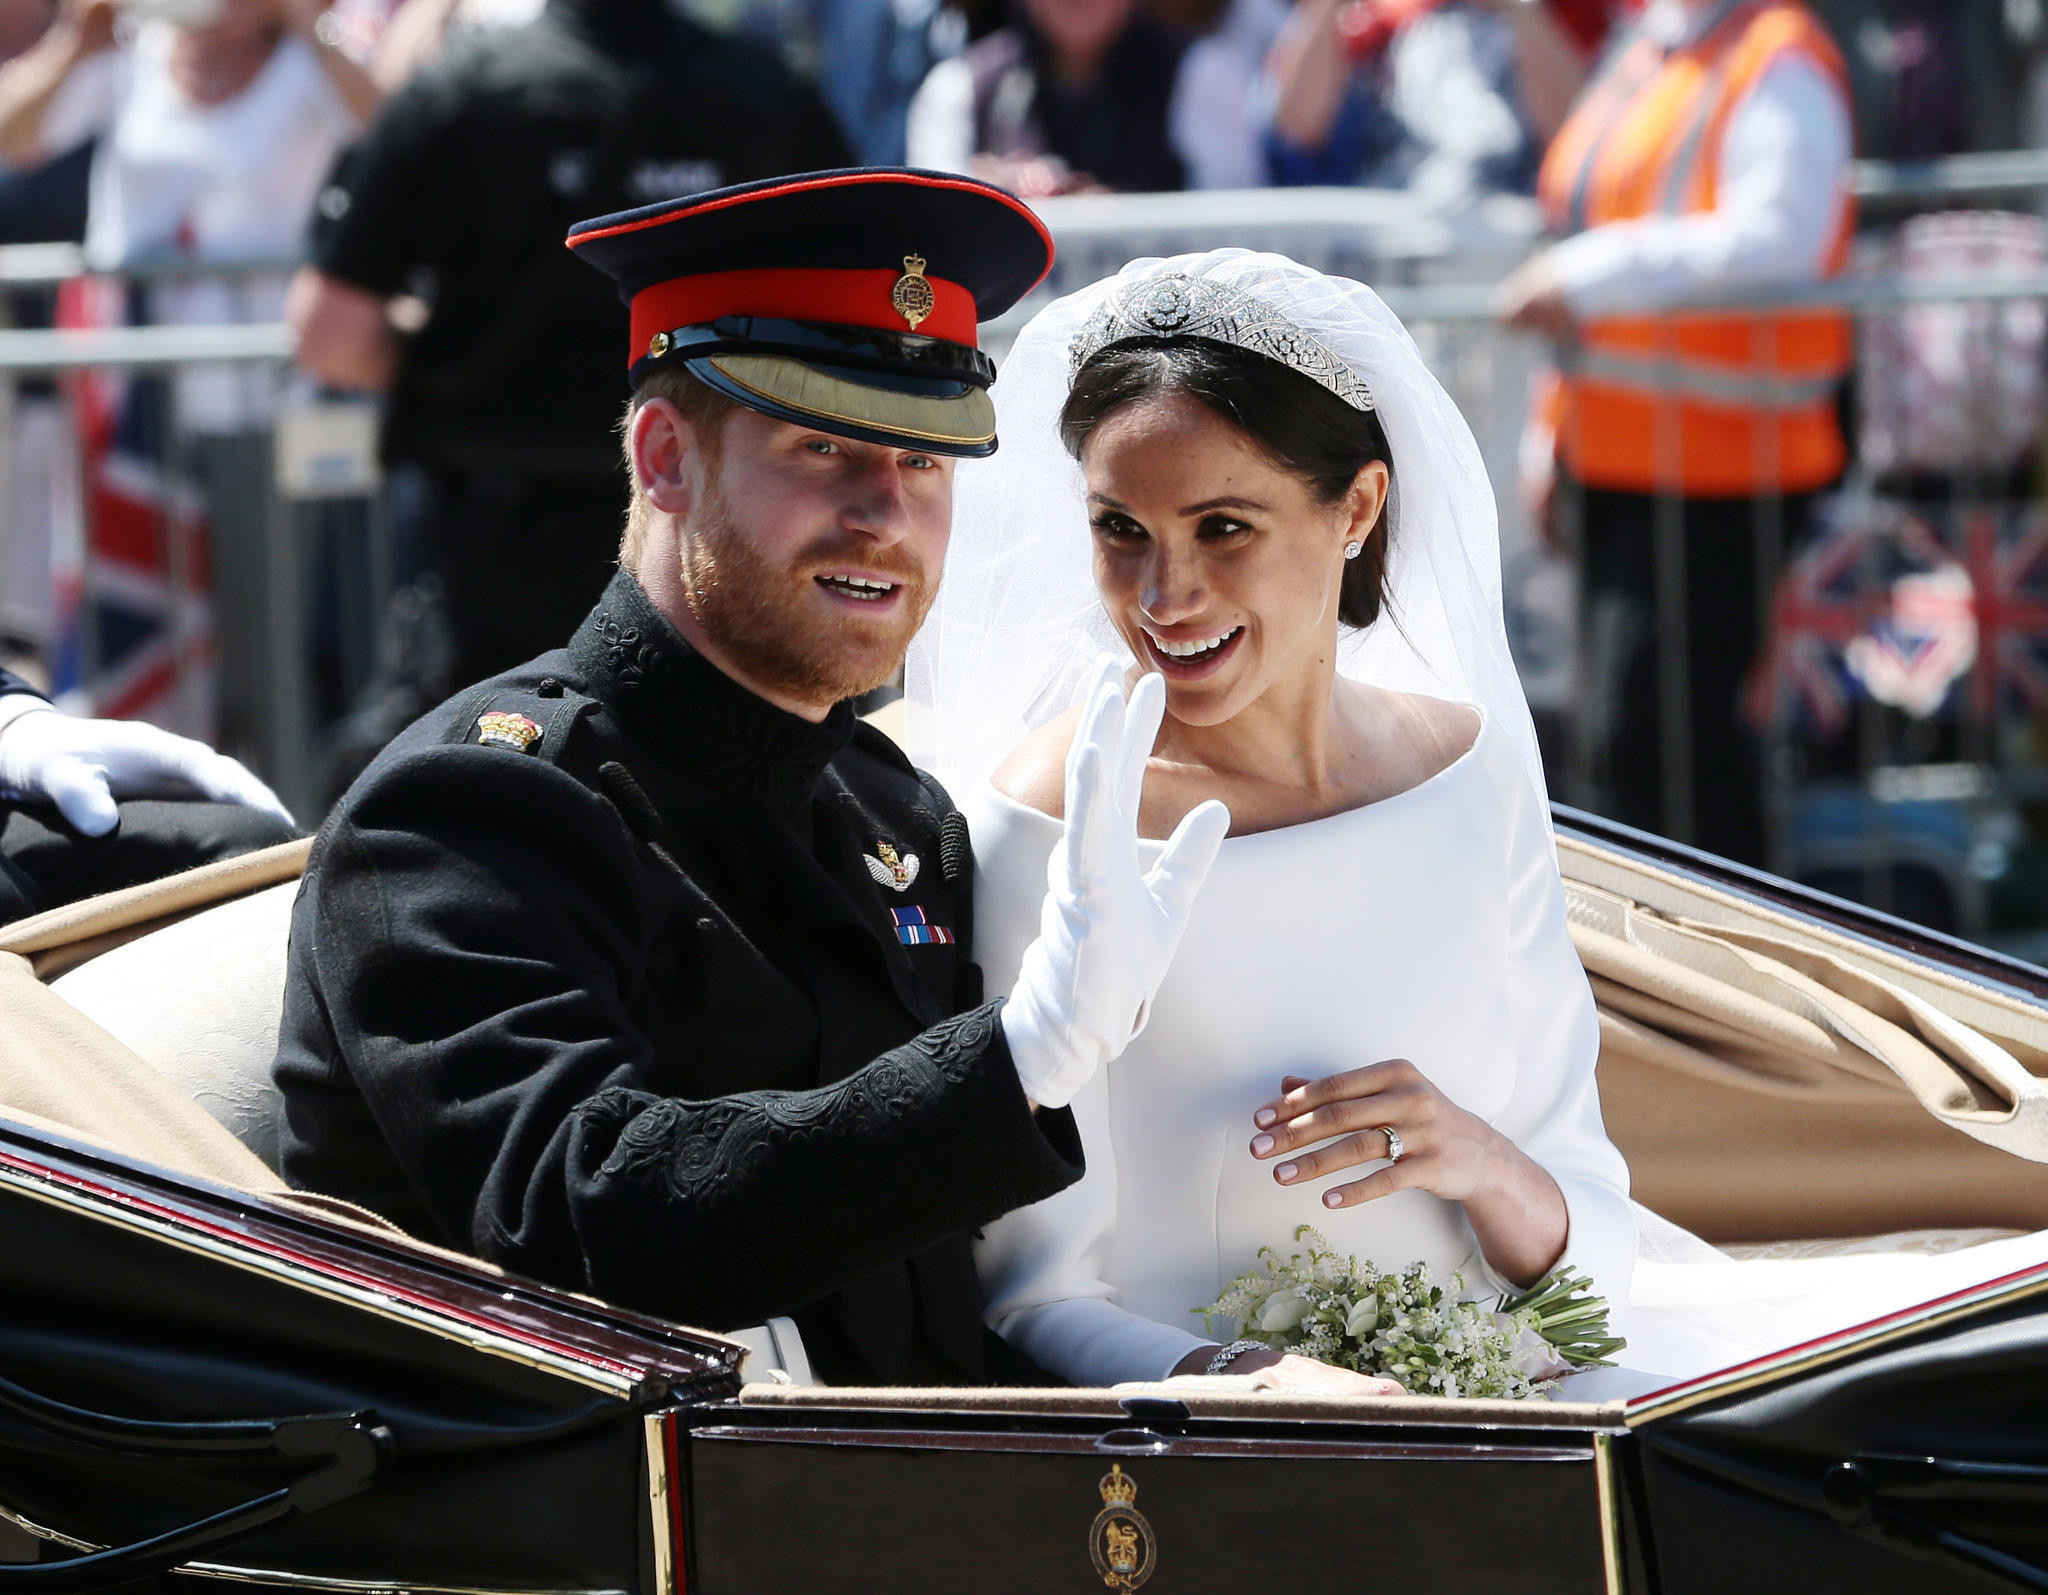 Hochzeit In England Prinz Harry
 Prinz Harry Meghan Markle Alle Details zur ihrer